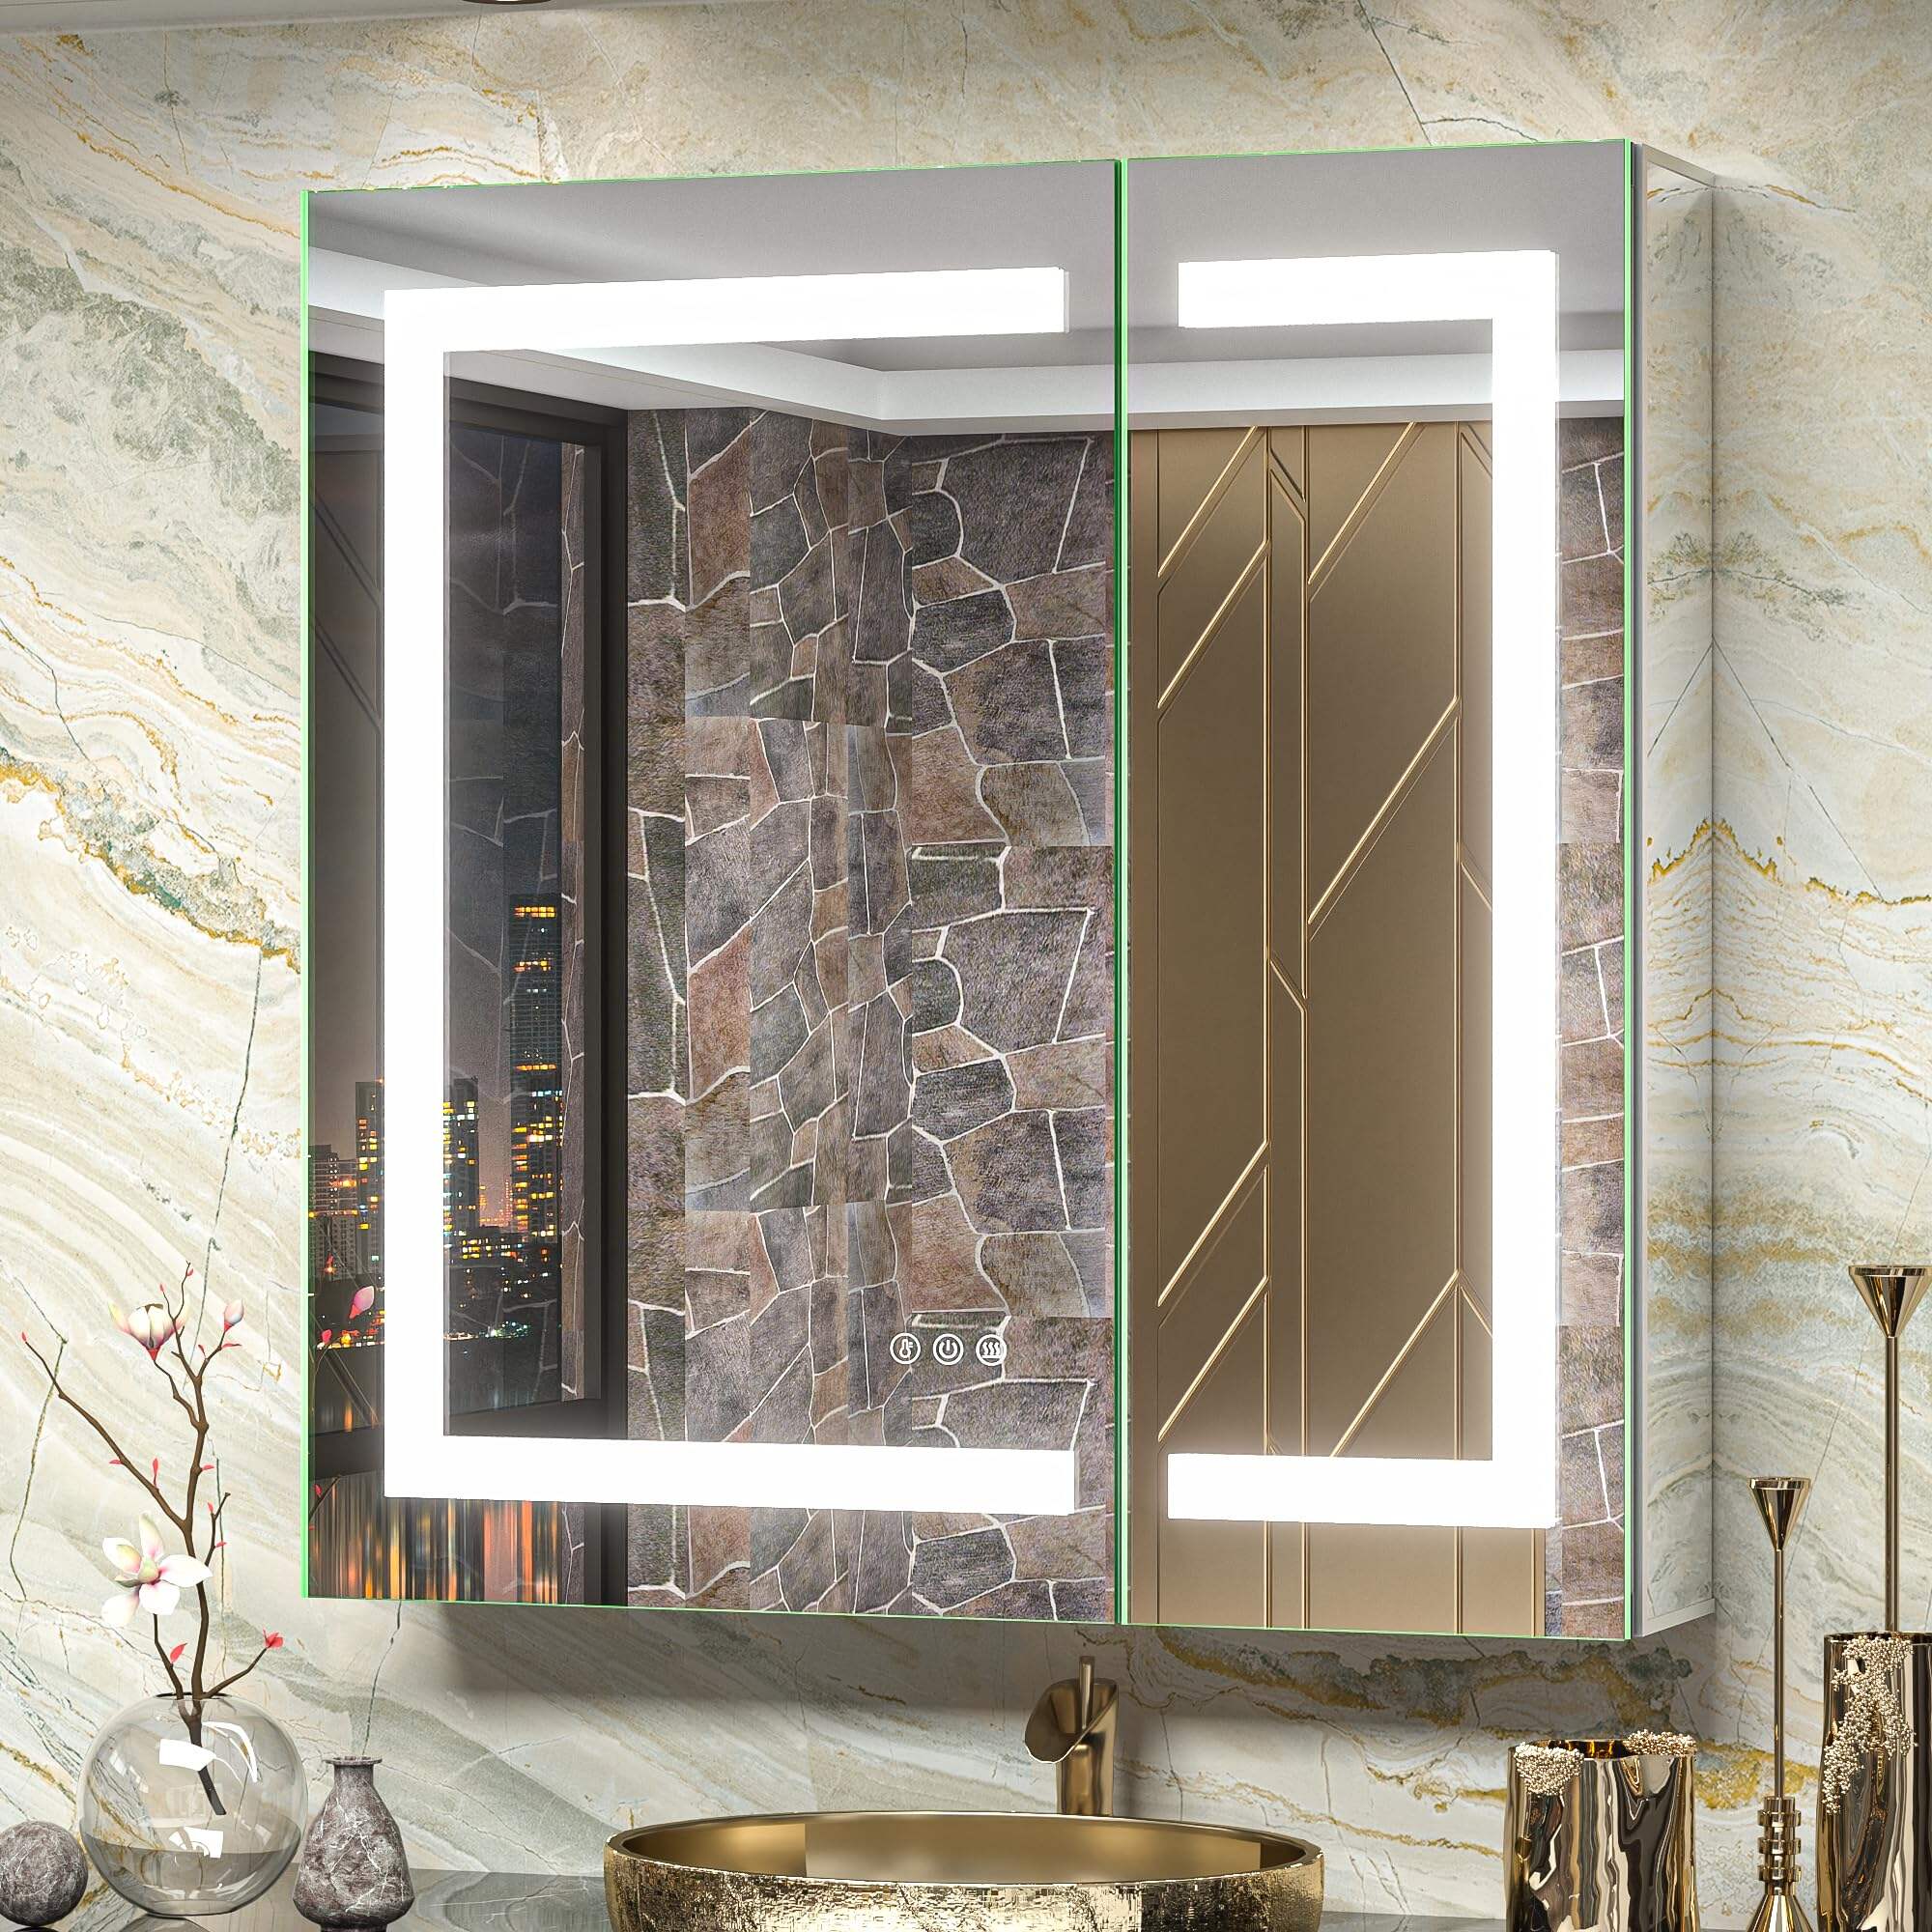 Foshan Haohan Smart Home Co., Ltd. 30x32 дзеркальні аптечні шафи для ванної кімнати з електричною розеткою, переднім підсвічуванням, захист від запотівання, 3 кольори, поверхня з регулюванням температури або врізне кріплення для туалетного столика та сучасного декору